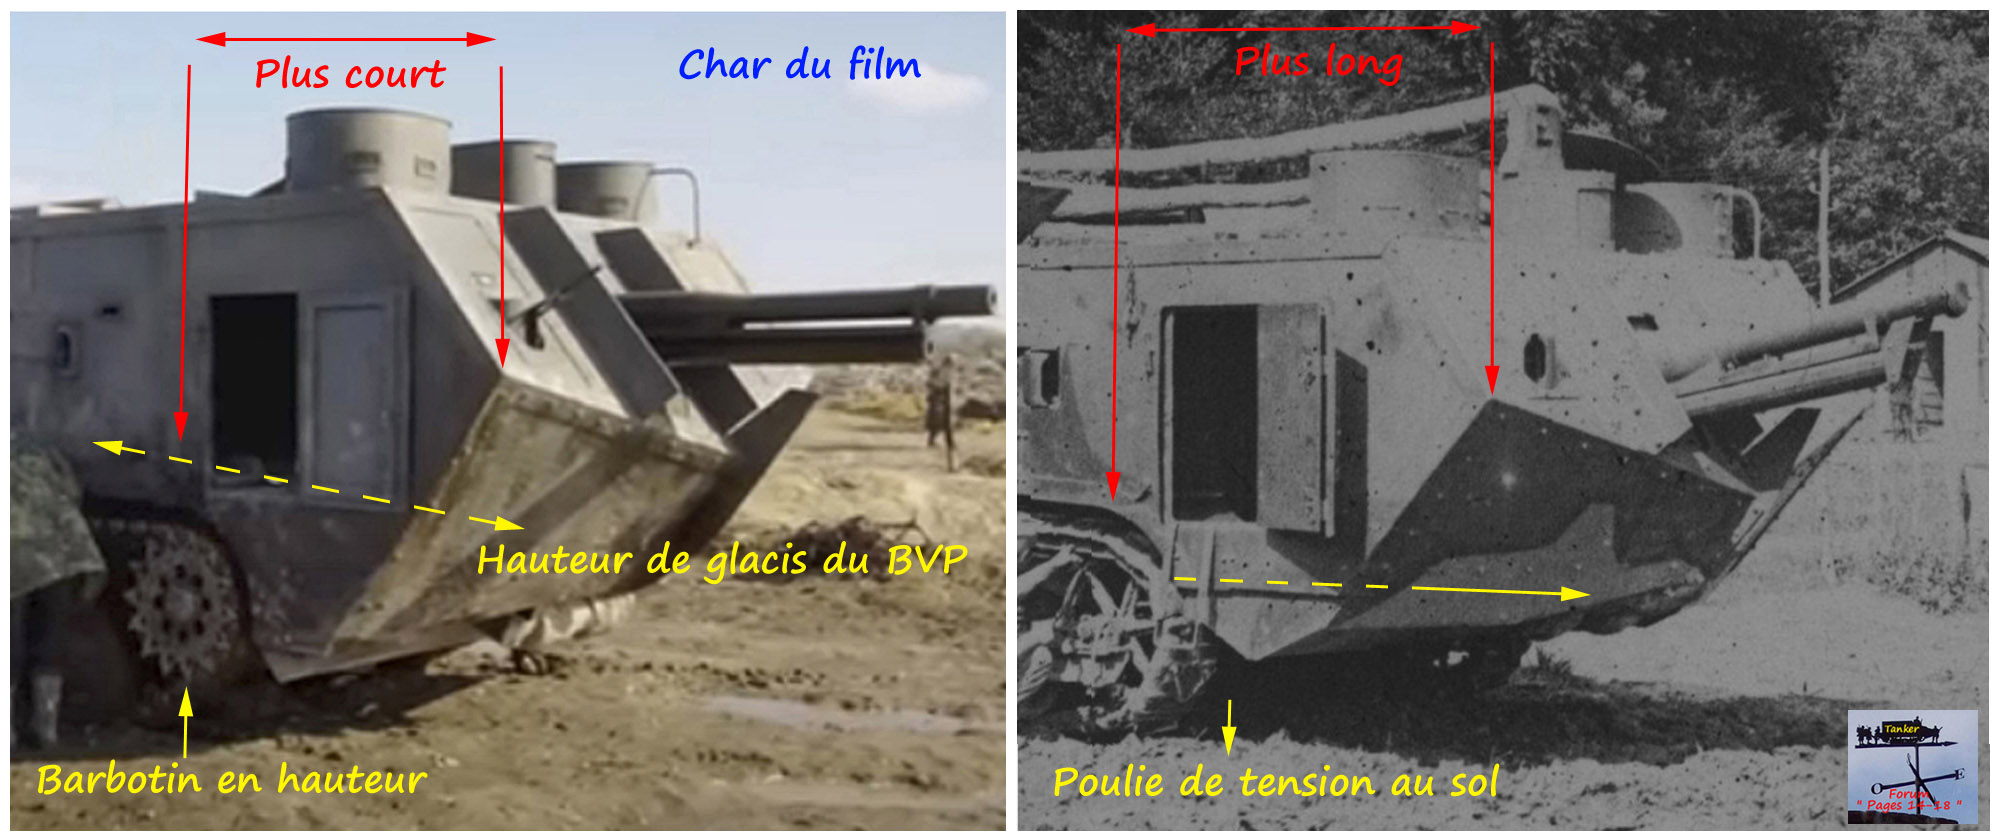 05 - St Chamond M1 Avant du char.jpg